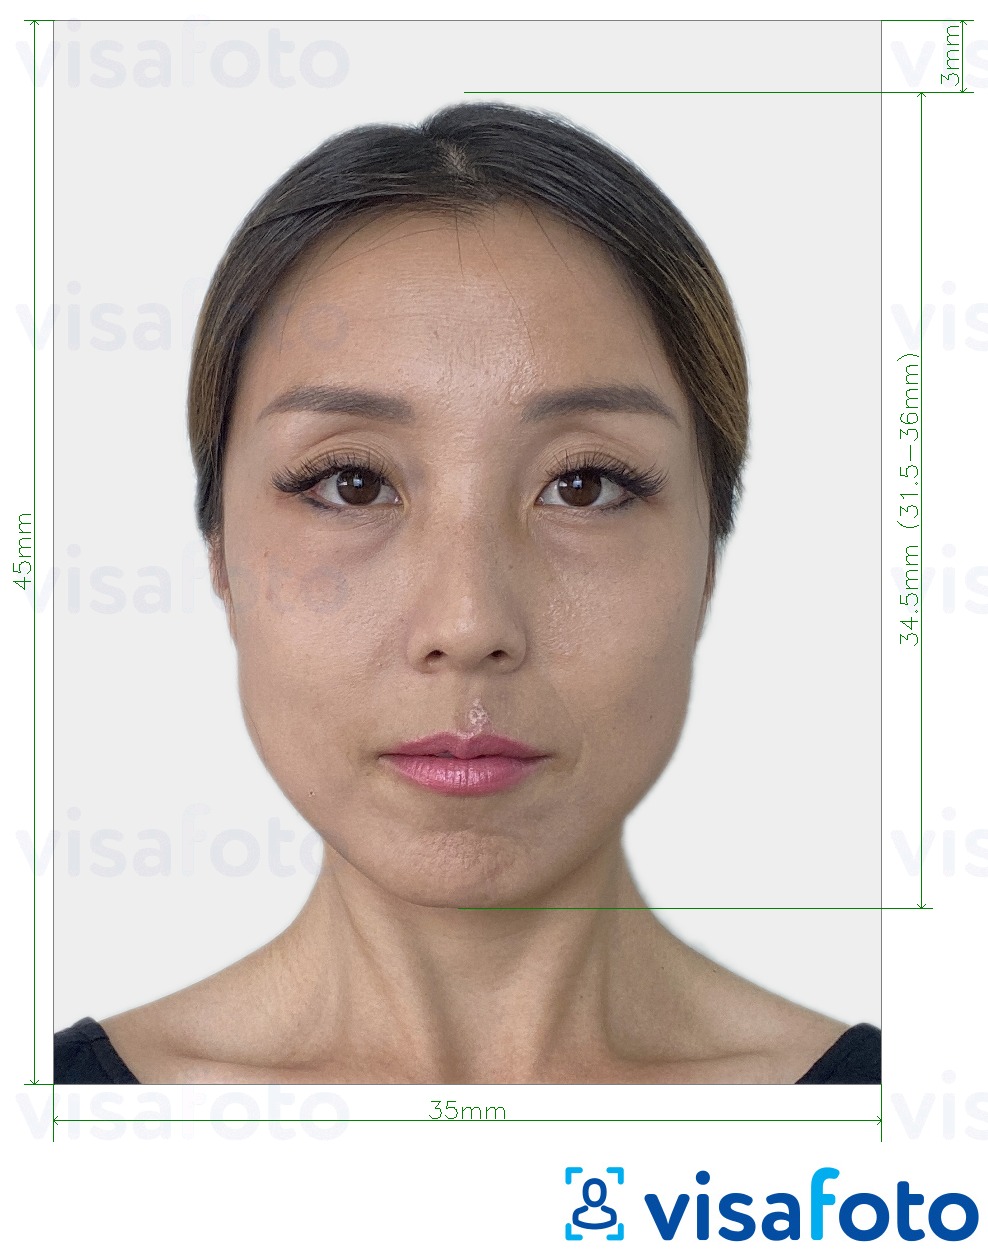 Voorbeeld van foto voor Zuid-Korea paspoort 35x45 mm (3.5x4.5 cm) met exacte maatspecificatie